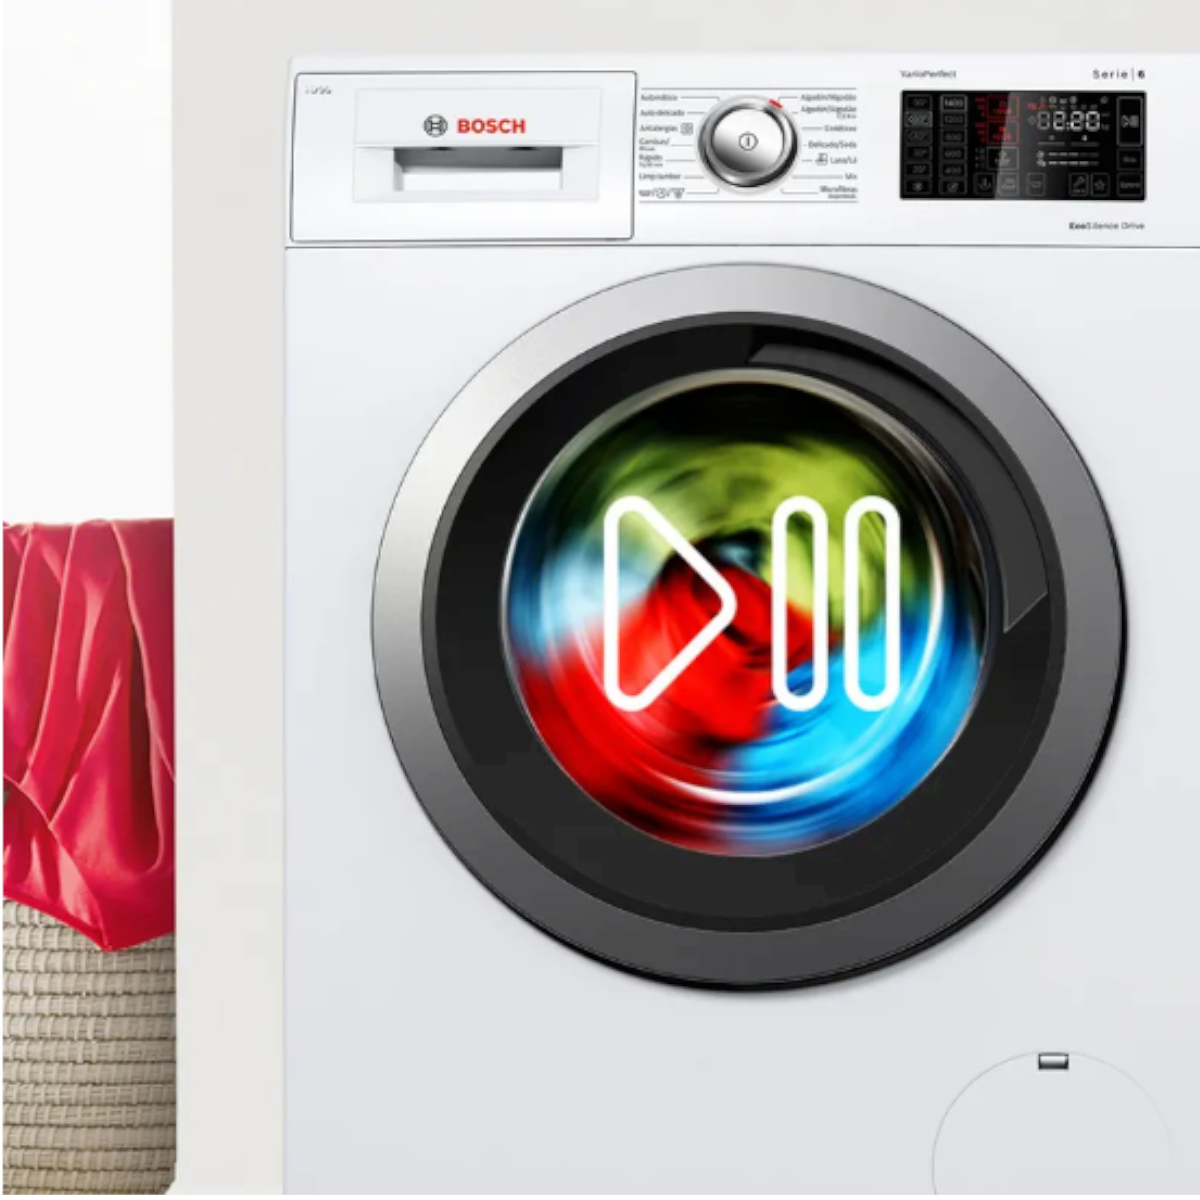 Μπροστινή λήψη του πλυντηρίου δείχνοντας τα σύμβολα έναρξης και παύσης να για τονίσει ότι μπορείς να διακόψεις και να ξαναξεκινήσεις την λειτουργία για να προσθέσεις ρούχα